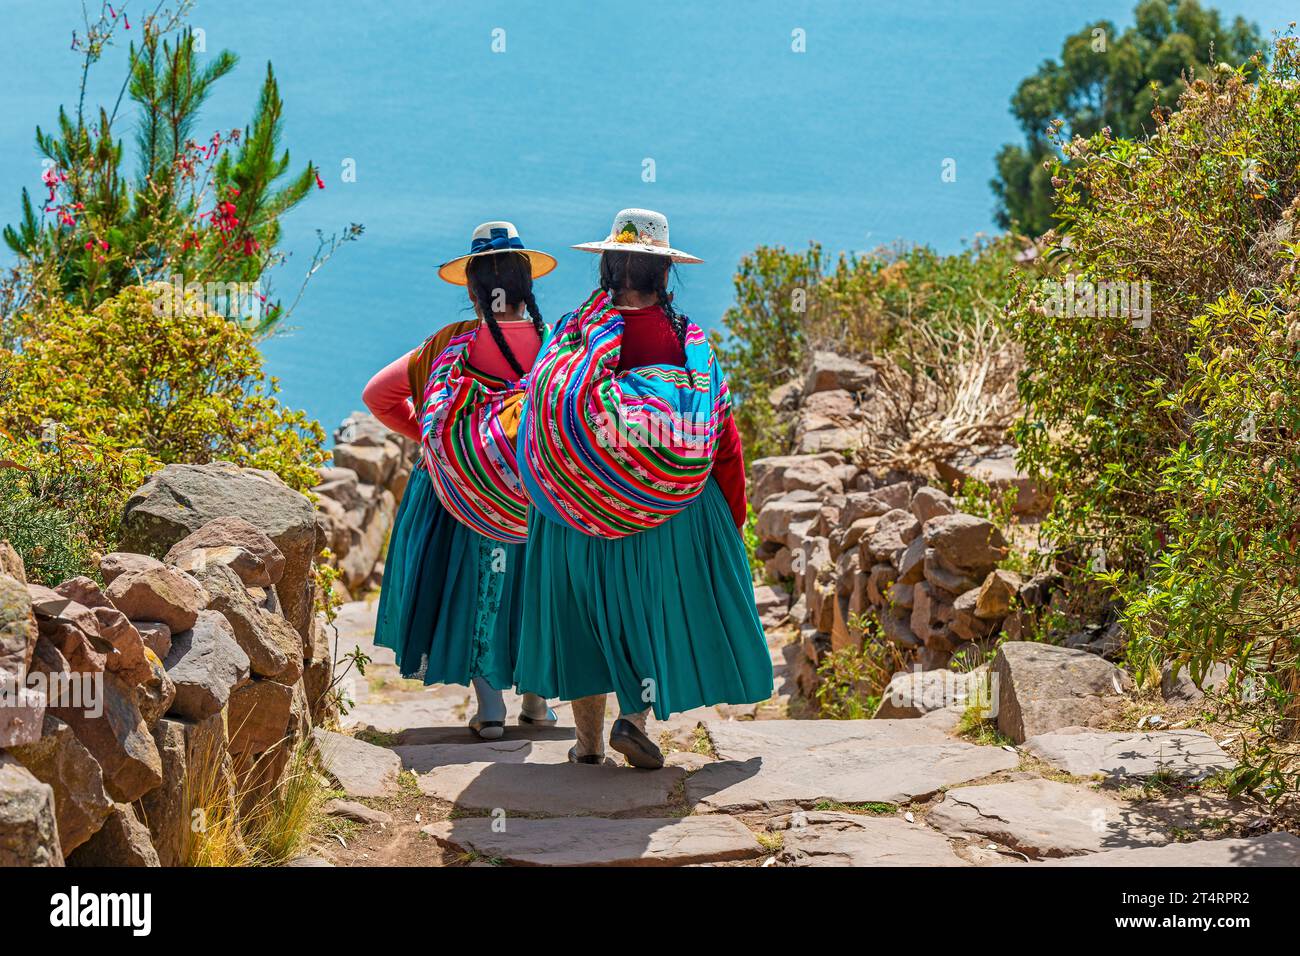 Peruanische indigene Quechua-Frauen in traditioneller Kleidung auf der Insel Taquile, Titicaca-See, Peru. Stockfoto